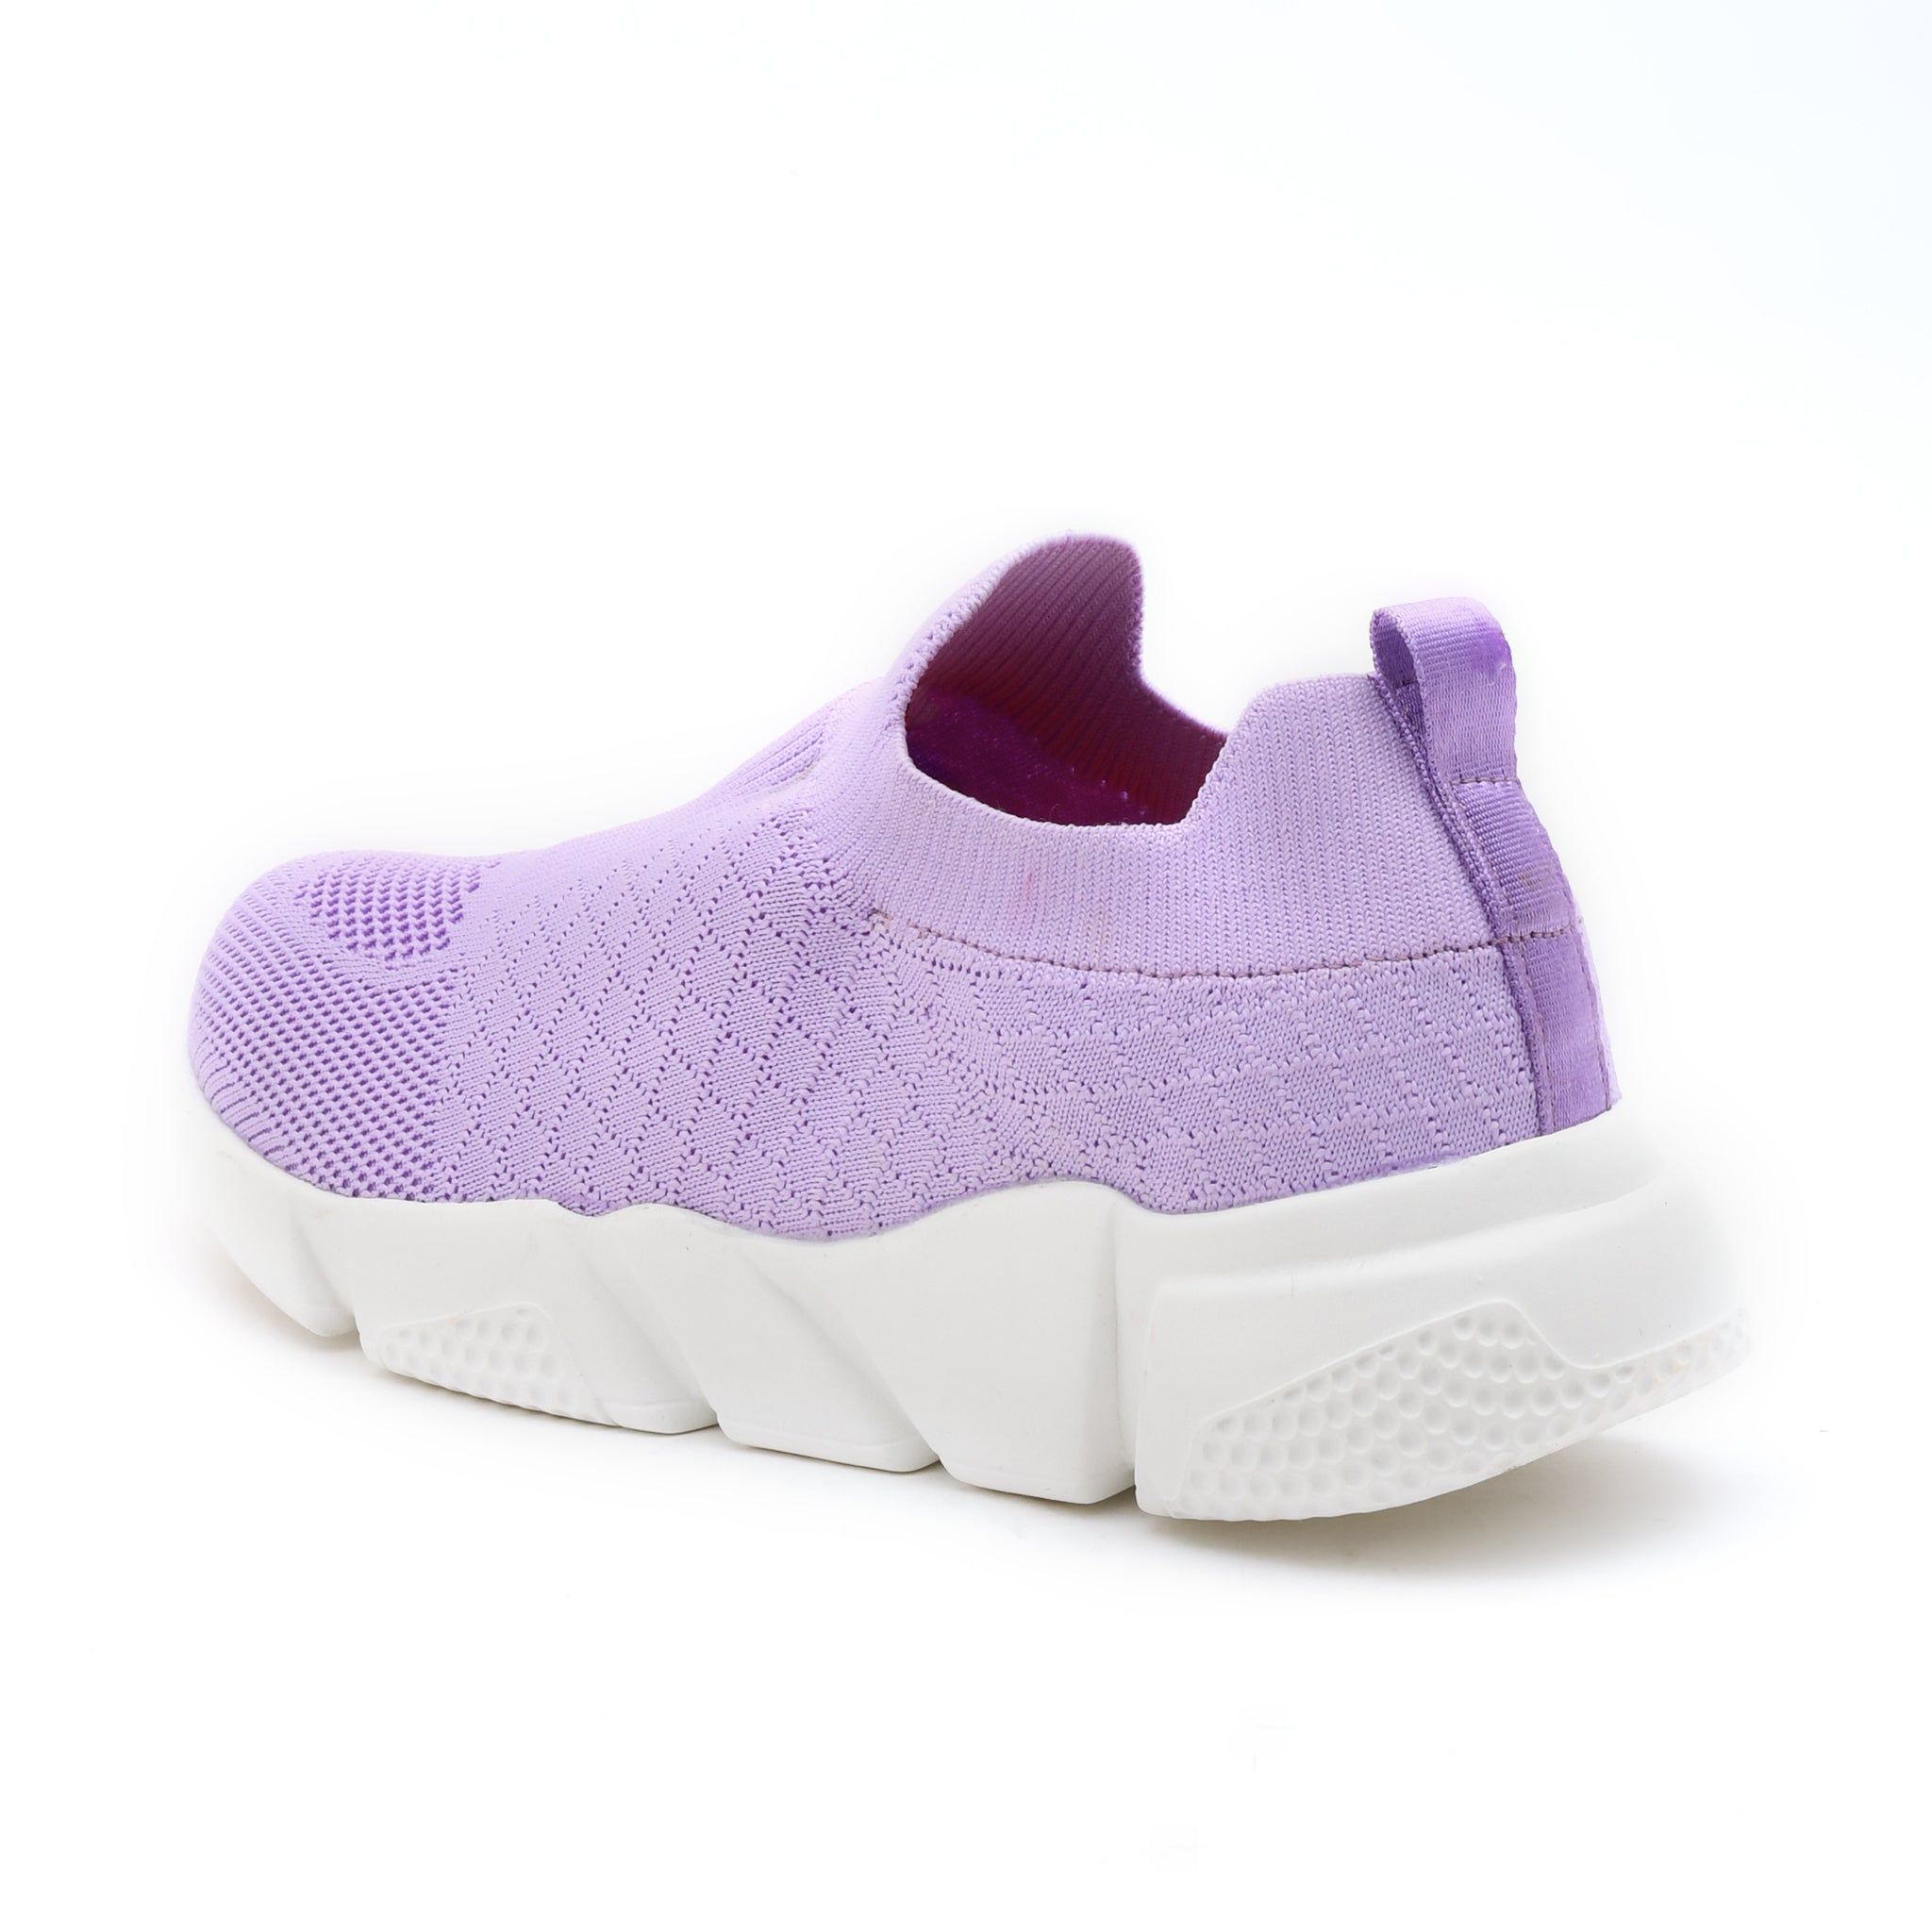 Impakto  Trend Fit  Women's  Violet Walking Shoes